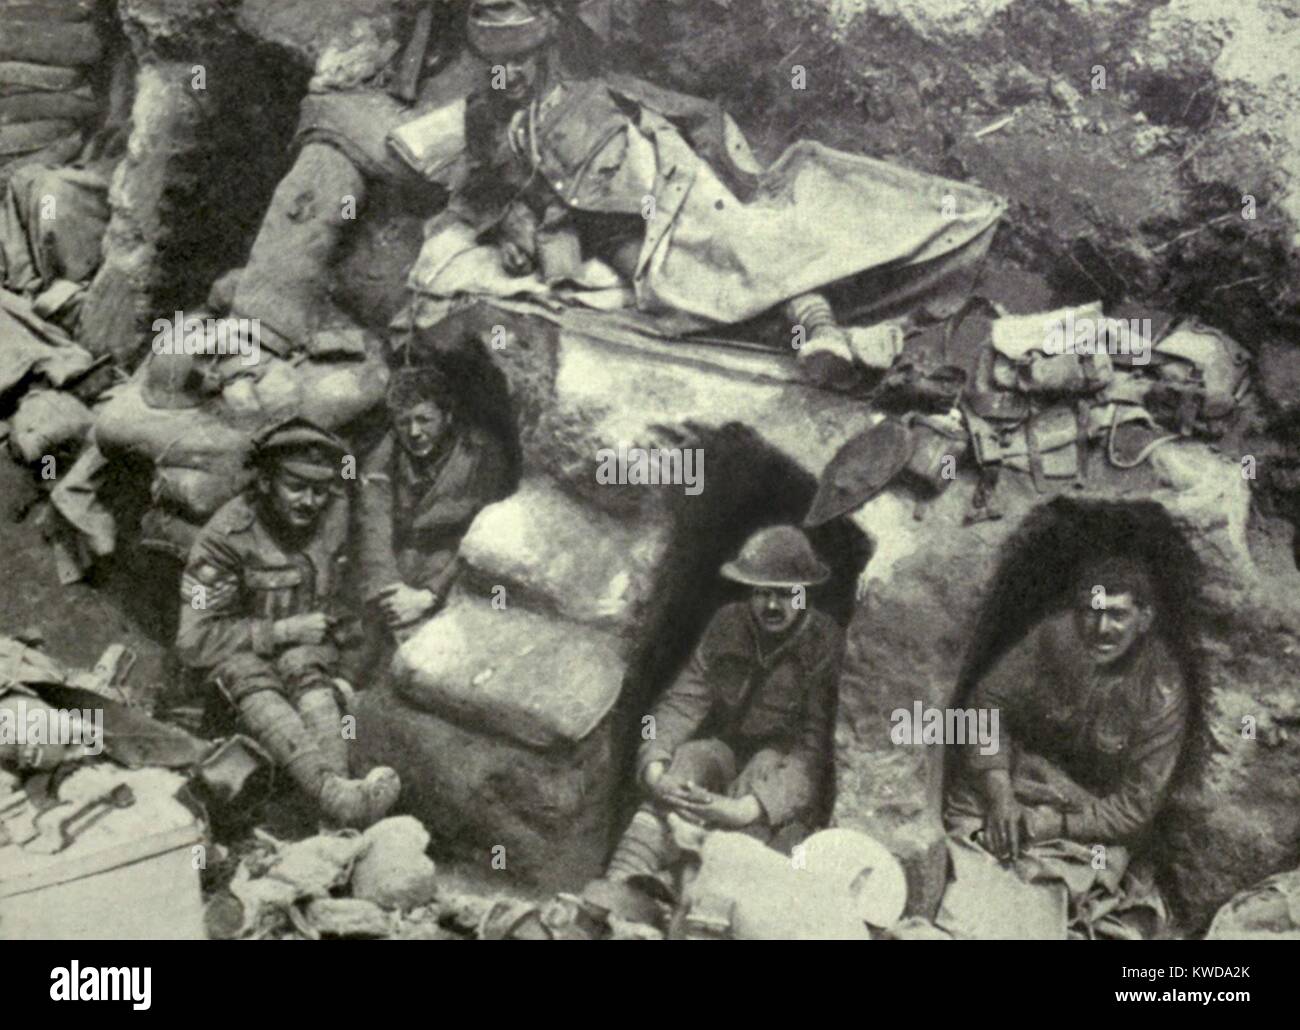 La Seconde Guerre mondiale 1. Offensive de la Somme. Des soldats de la Border Regiment au repos dans les mares peu profondes près de Thiepval, le bois. Août 1916. (BSLOC 2013 1 136) Banque D'Images